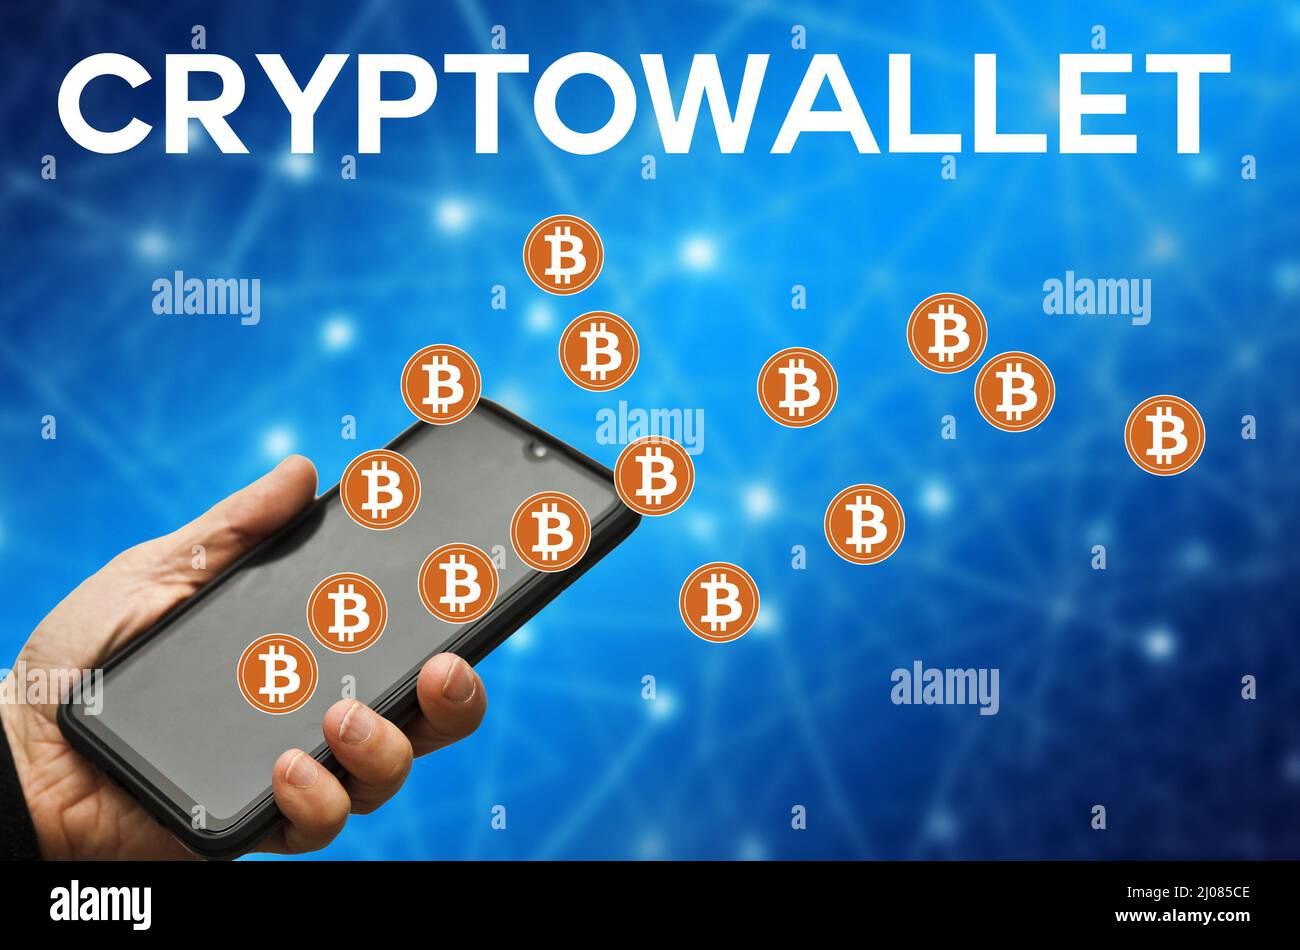 crypto wallet concept Stock Photo